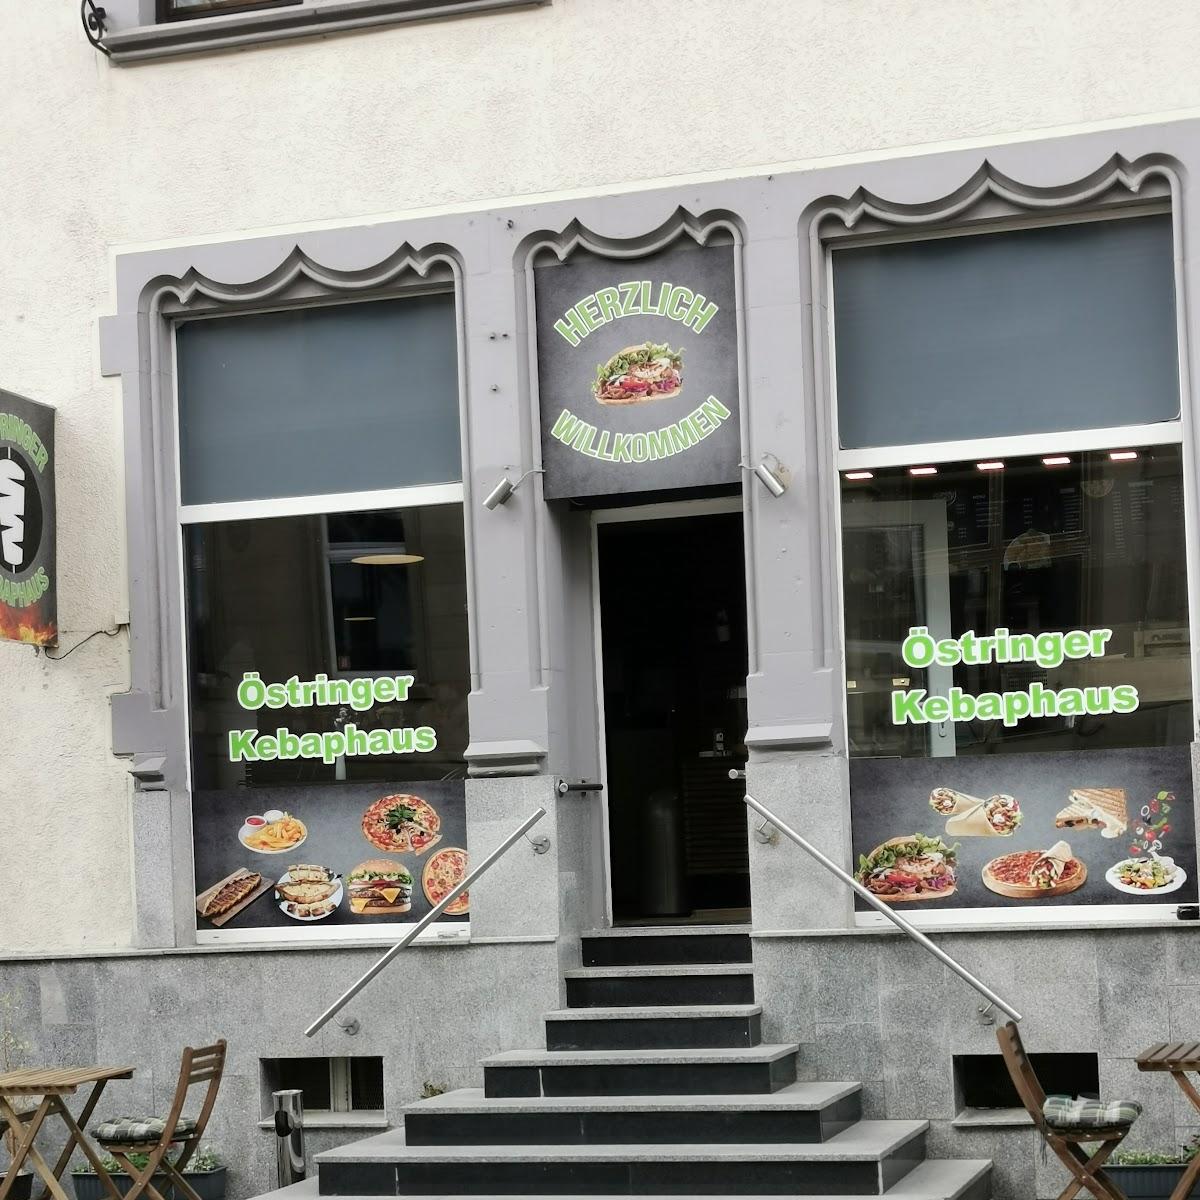 Restaurant "Östringer Kebaphaus" in Östringen